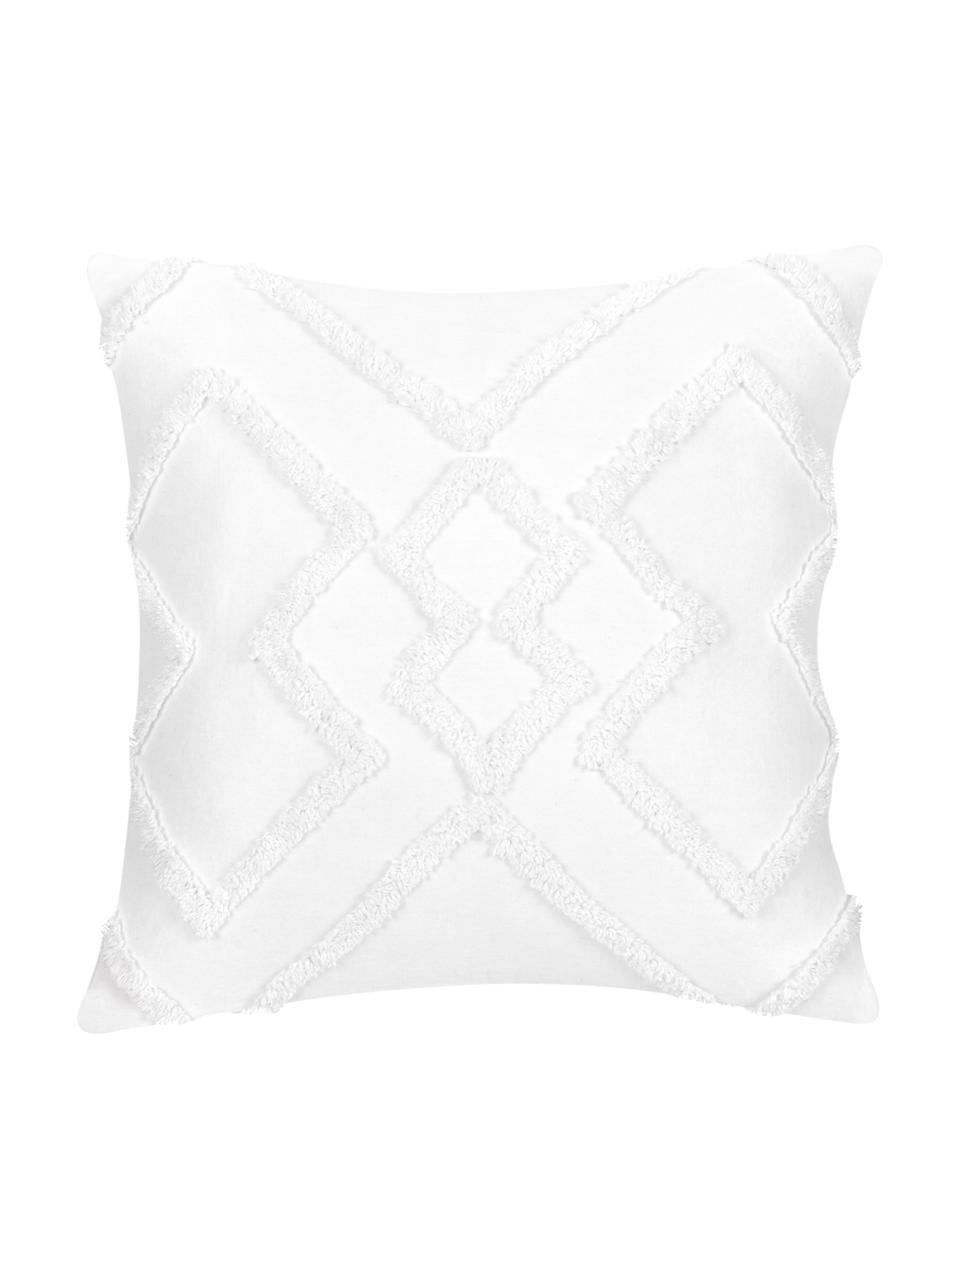 Kissenhülle Faith in Weiß mit getuftetem Rautenmuster, 100% Baumwolle, Weiß, B 50 x L 50 cm